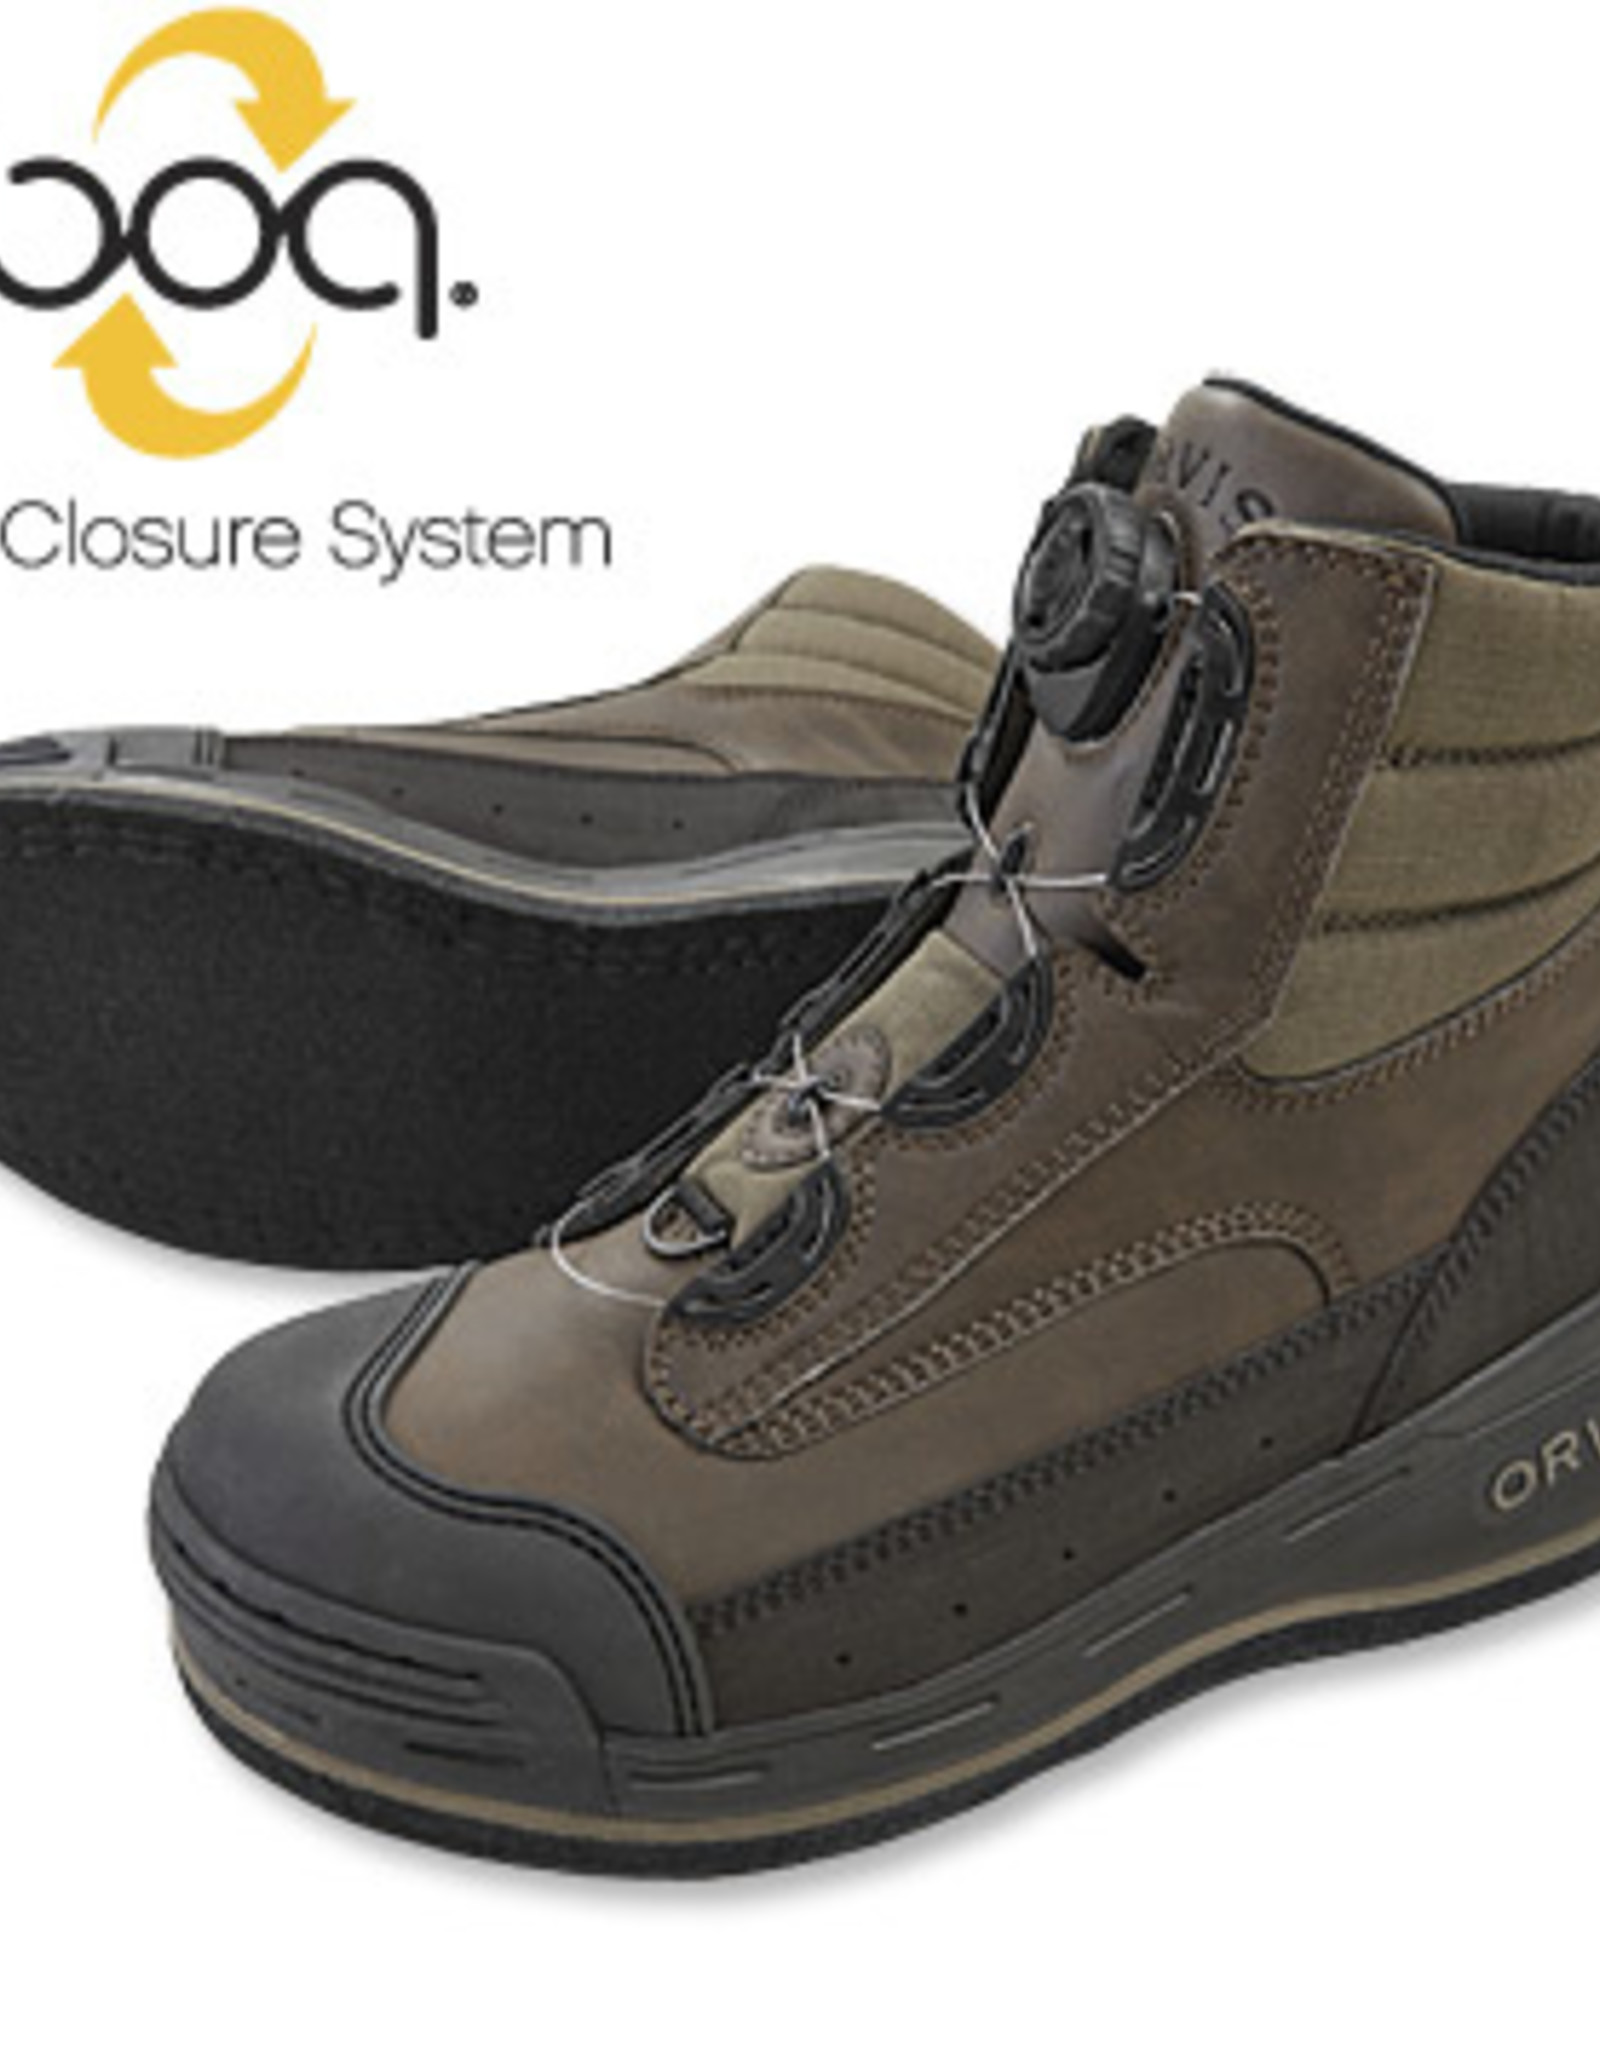 Orvis Pivot Wading Boots - Sexton \u0026 Sexton